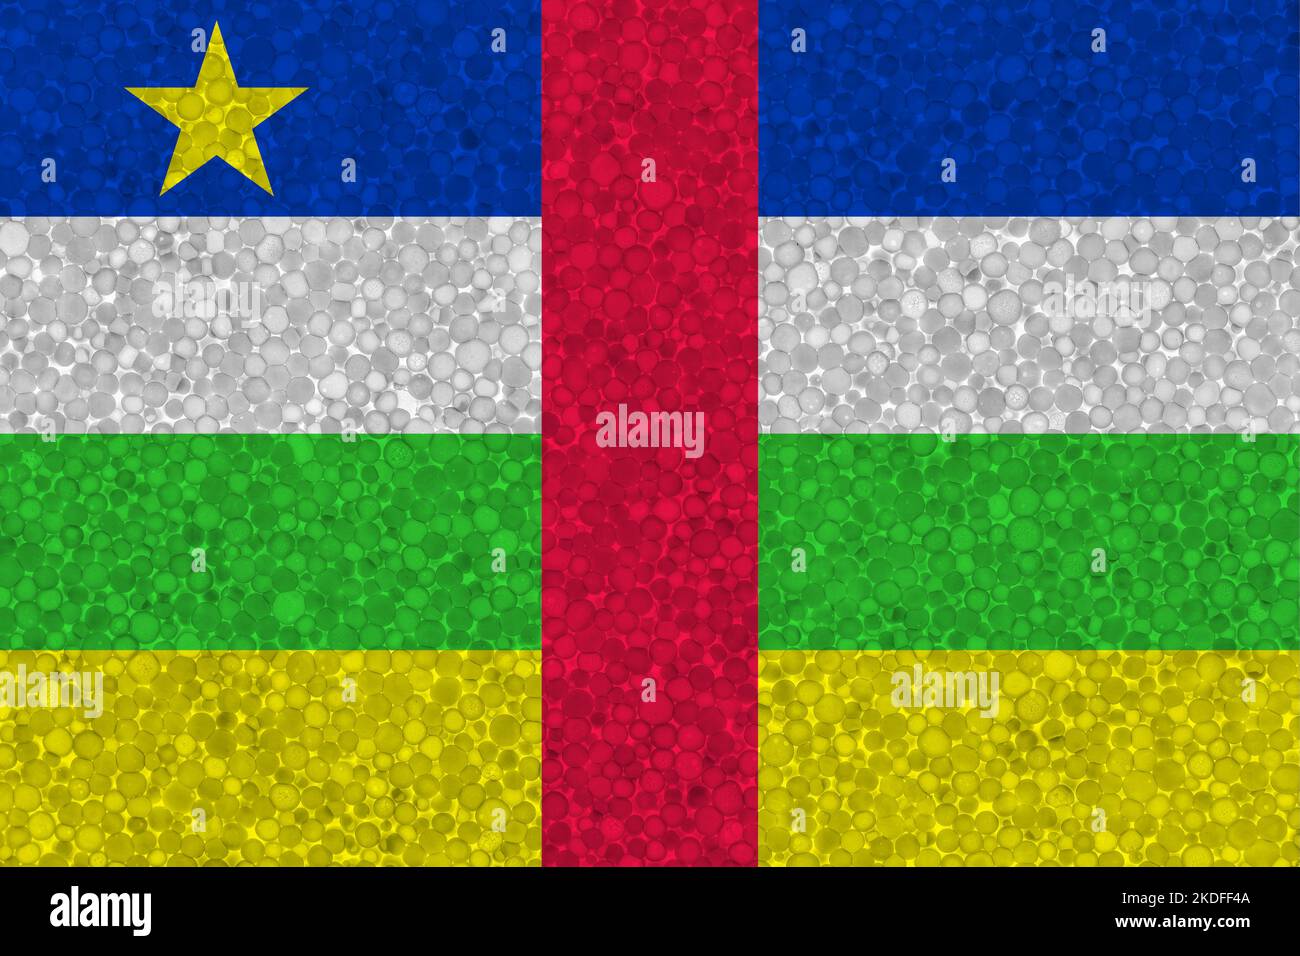 Drapeau de la République centrafricaine sur la texture de la styromousse. Drapeau national peint sur la surface de la mousse plastique Banque D'Images